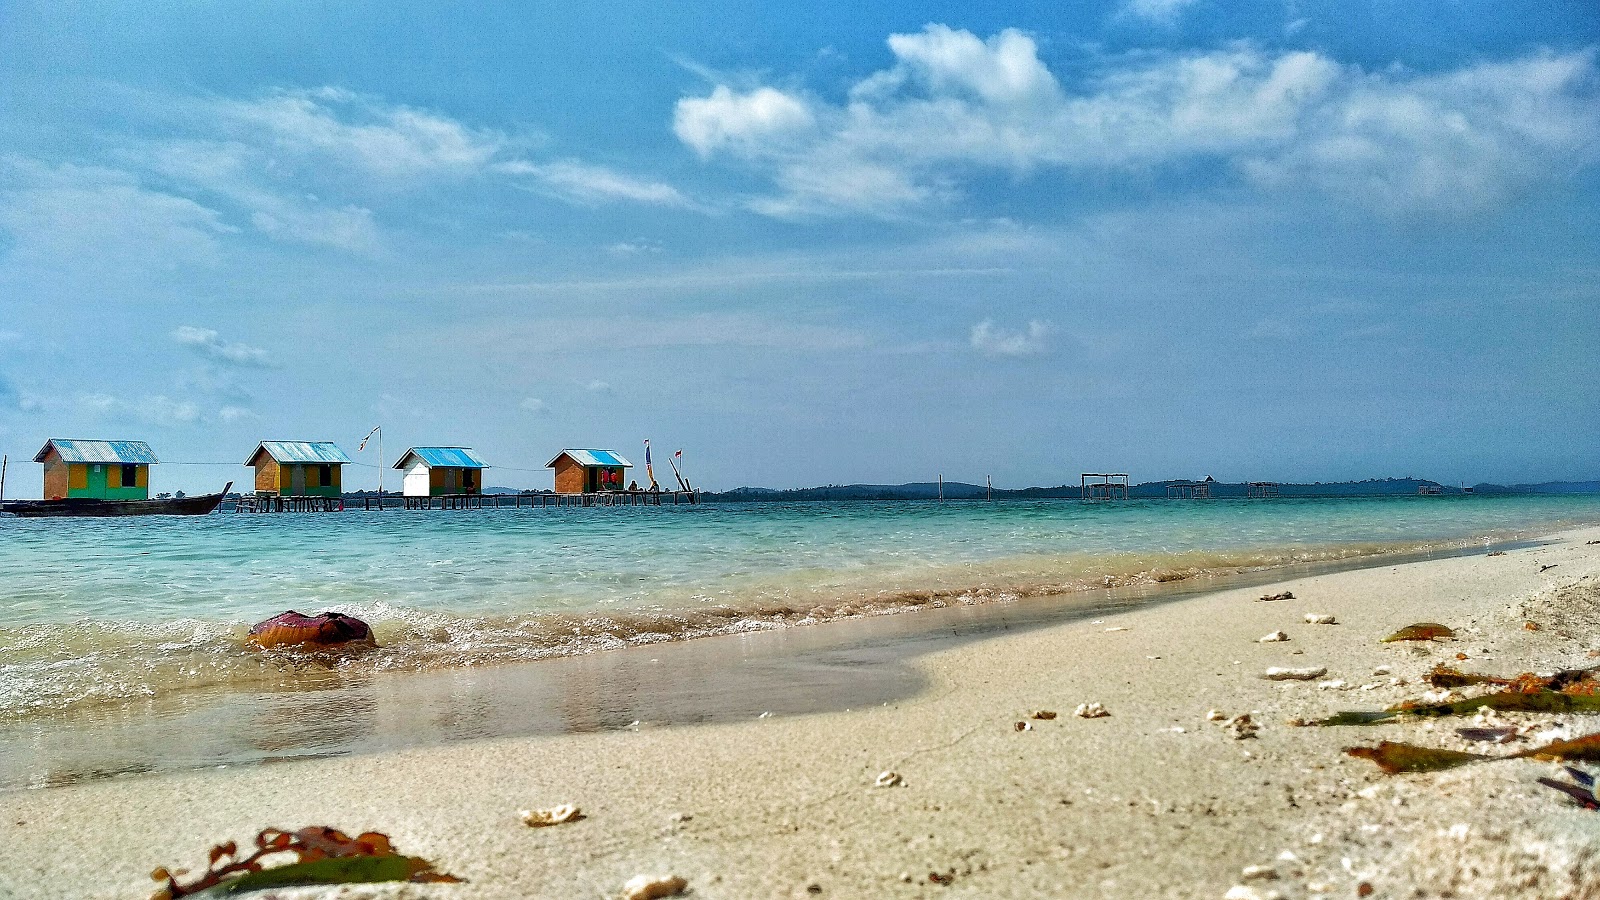 Foto di Wisata Pulau Mubut Darat e l'insediamento